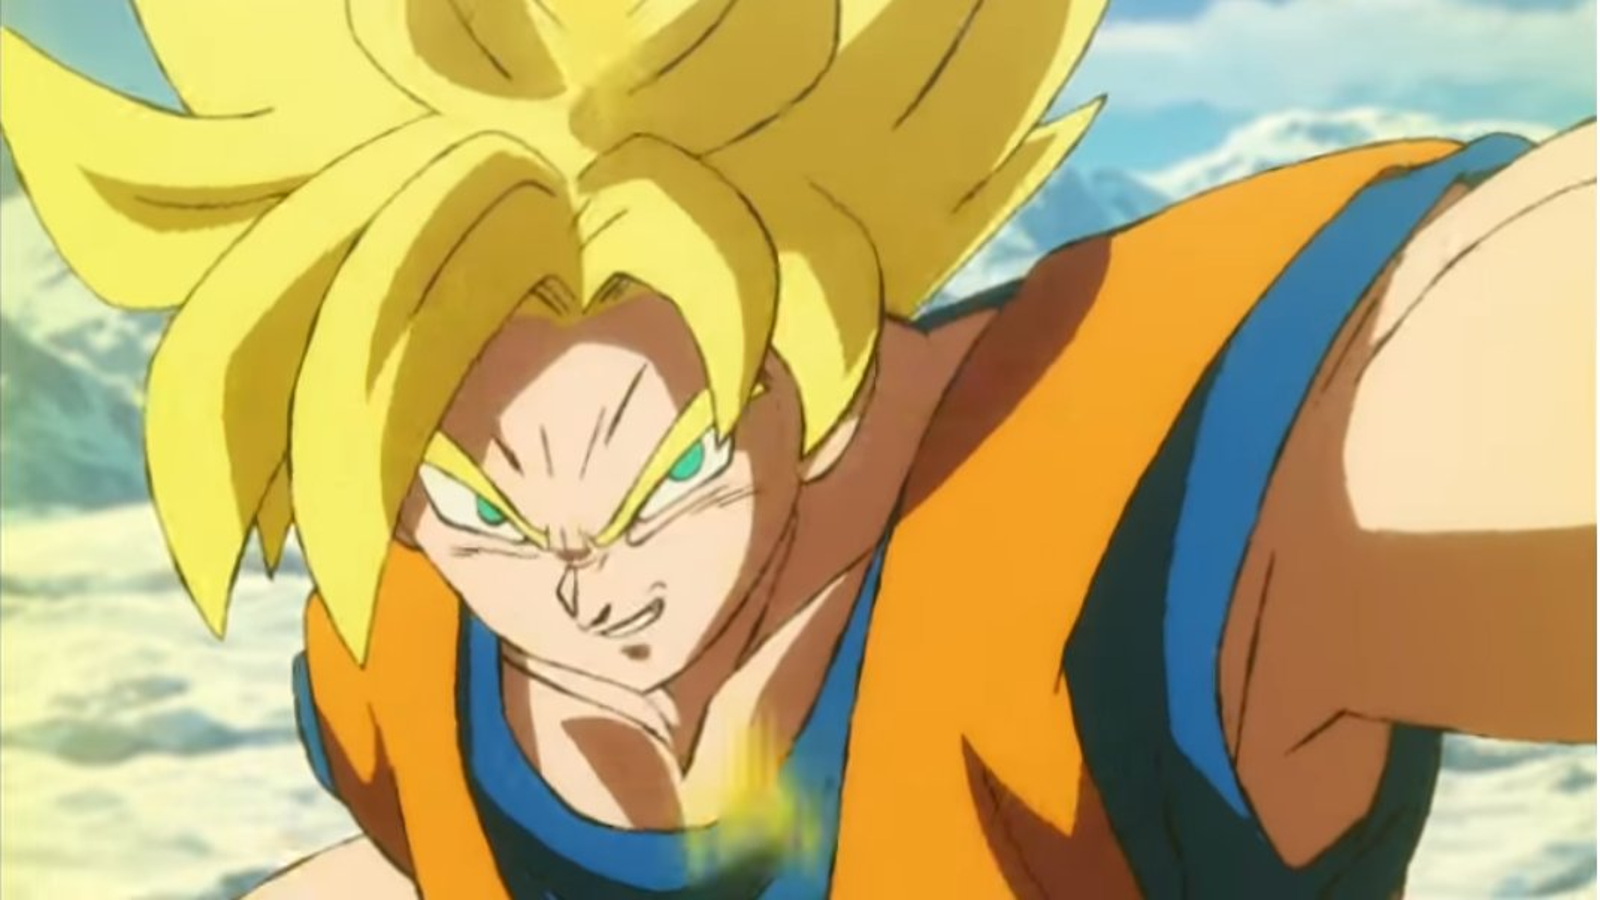 Dragon Ball: Artista cria versão de Goku SSJ 4 no filme de Broly